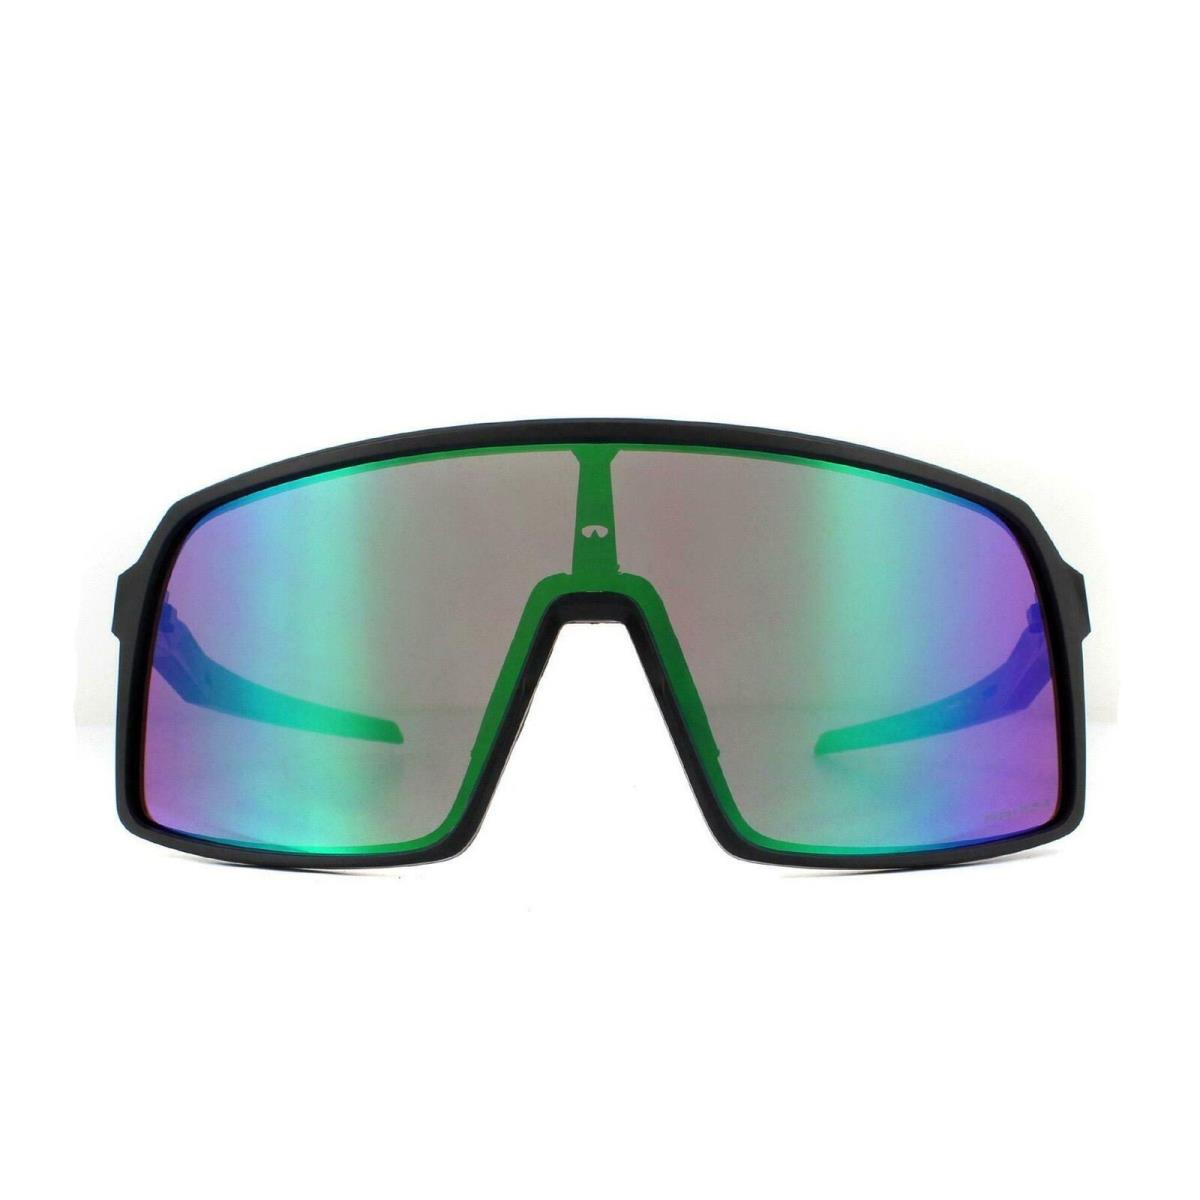 OO9406-52 Mens Oakley Sutro Sunglasses - Frame: Black, Lens: Green